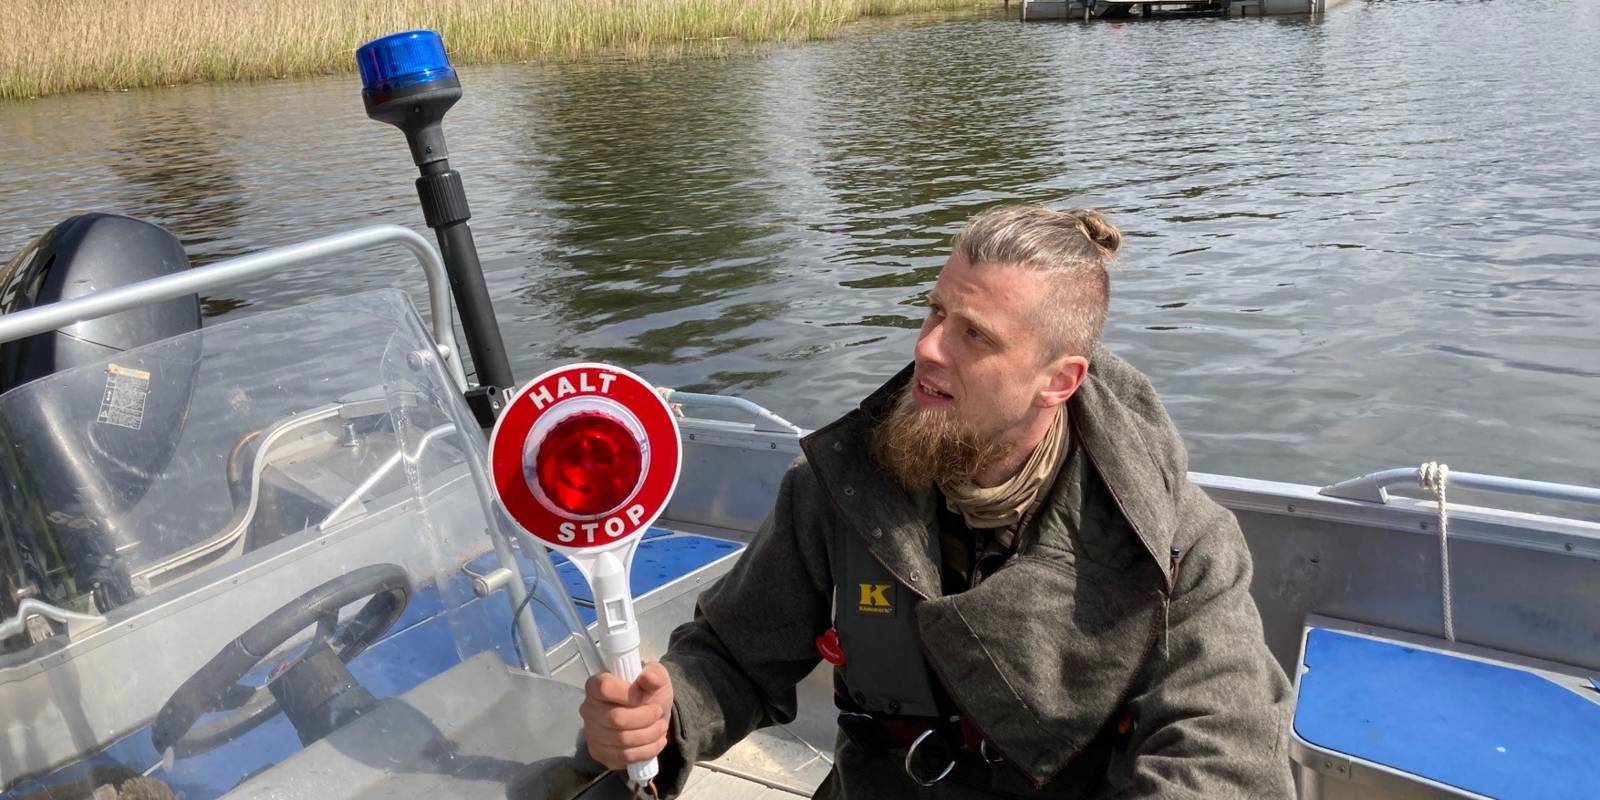 Ein Mann hockt mit einer "Halt! Stop!"-Winkekelle in einem Boot